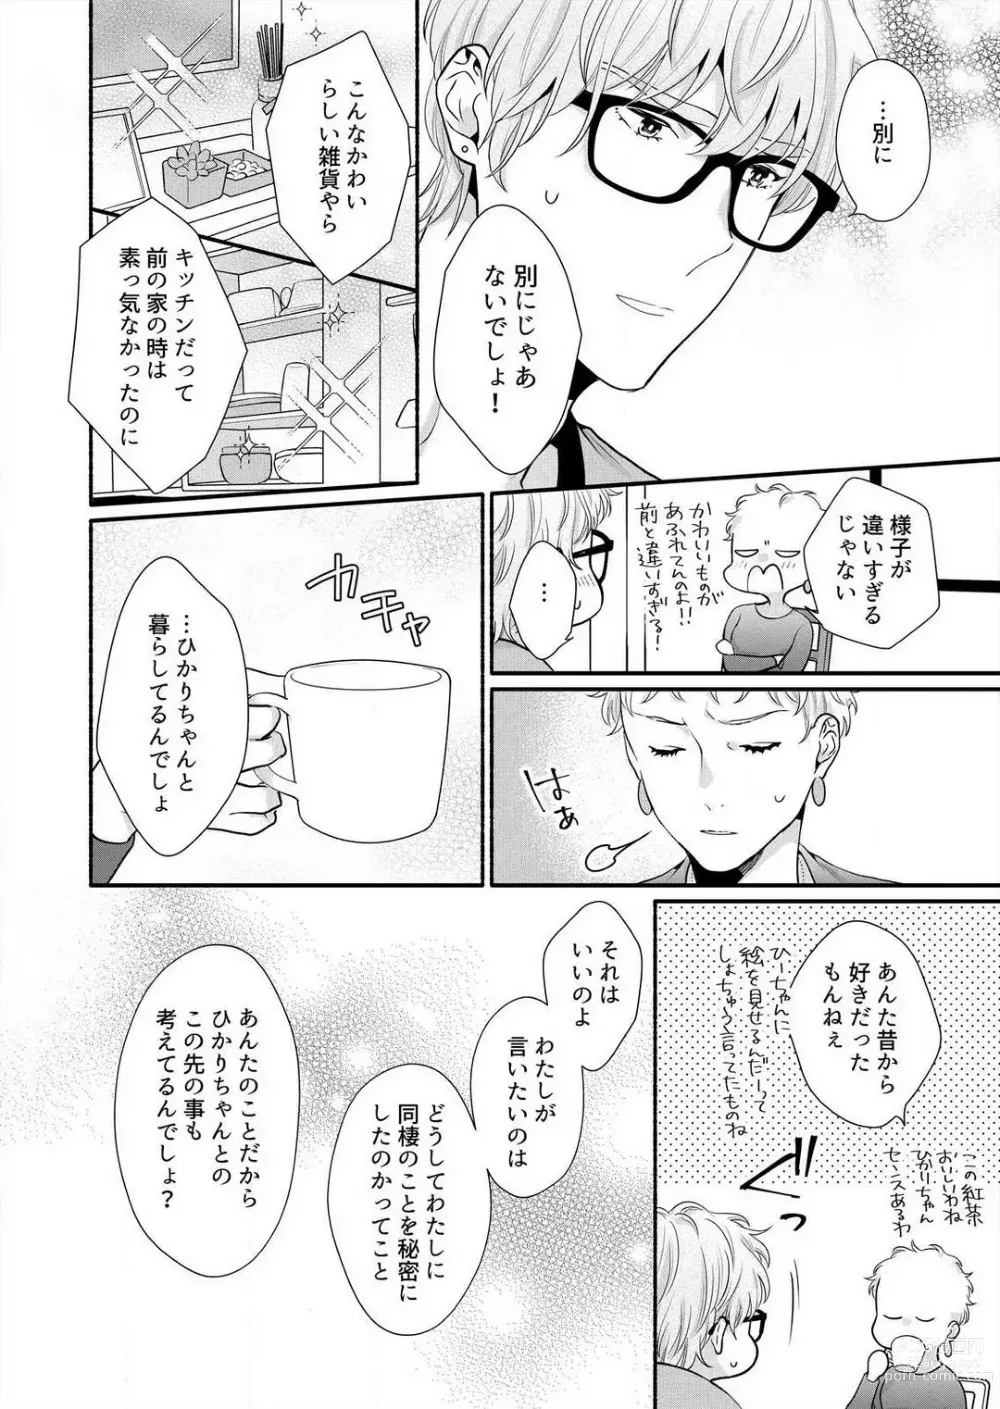 Page 188 of manga Suki Kawaii Guchagucha ni Shitai - Osananajimi wa Kojirase Sugiteru 1-8